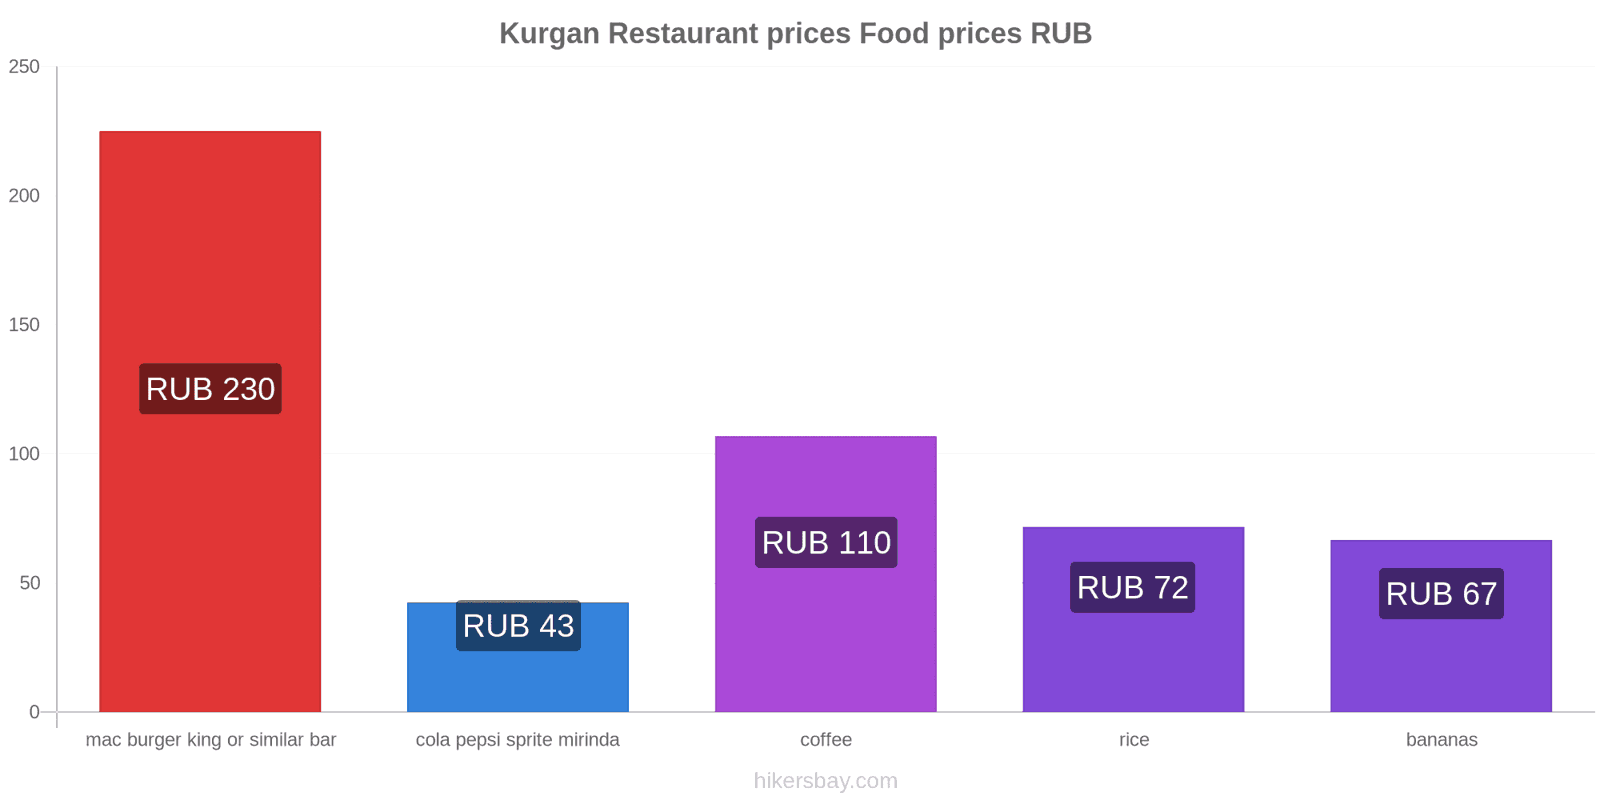 Kurgan price changes hikersbay.com